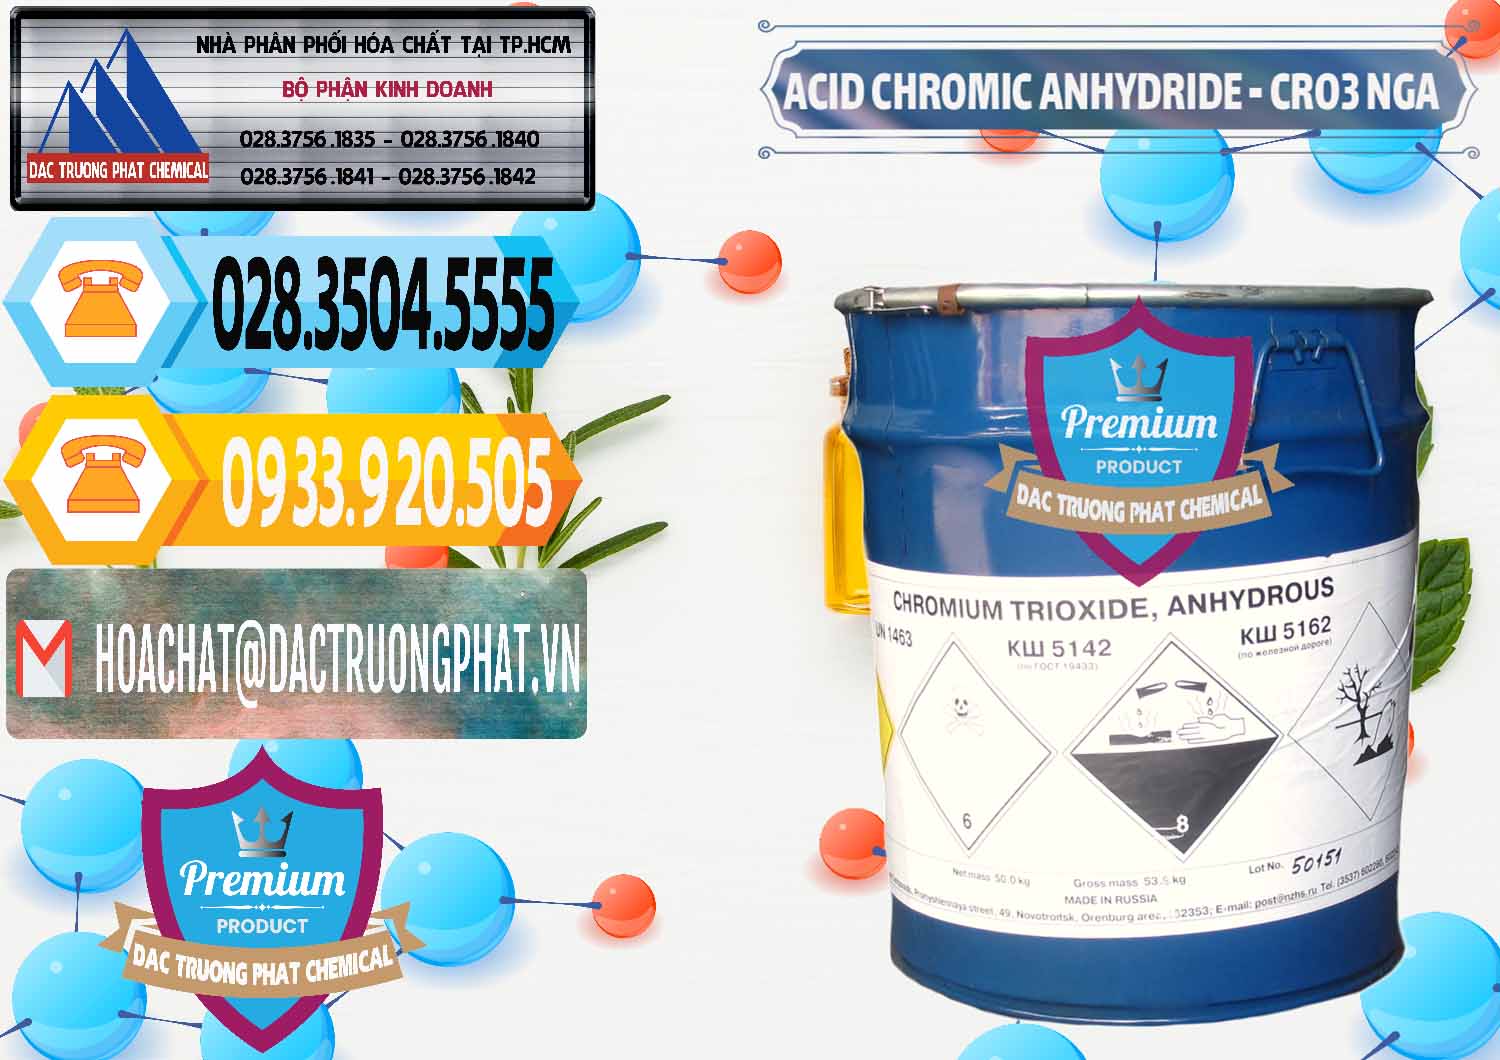 Công ty kinh doanh _ bán Acid Chromic Anhydride - Cromic CRO3 Nga Russia - 0006 - Cty cung ứng và phân phối hóa chất tại TP.HCM - hoachattayrua.net